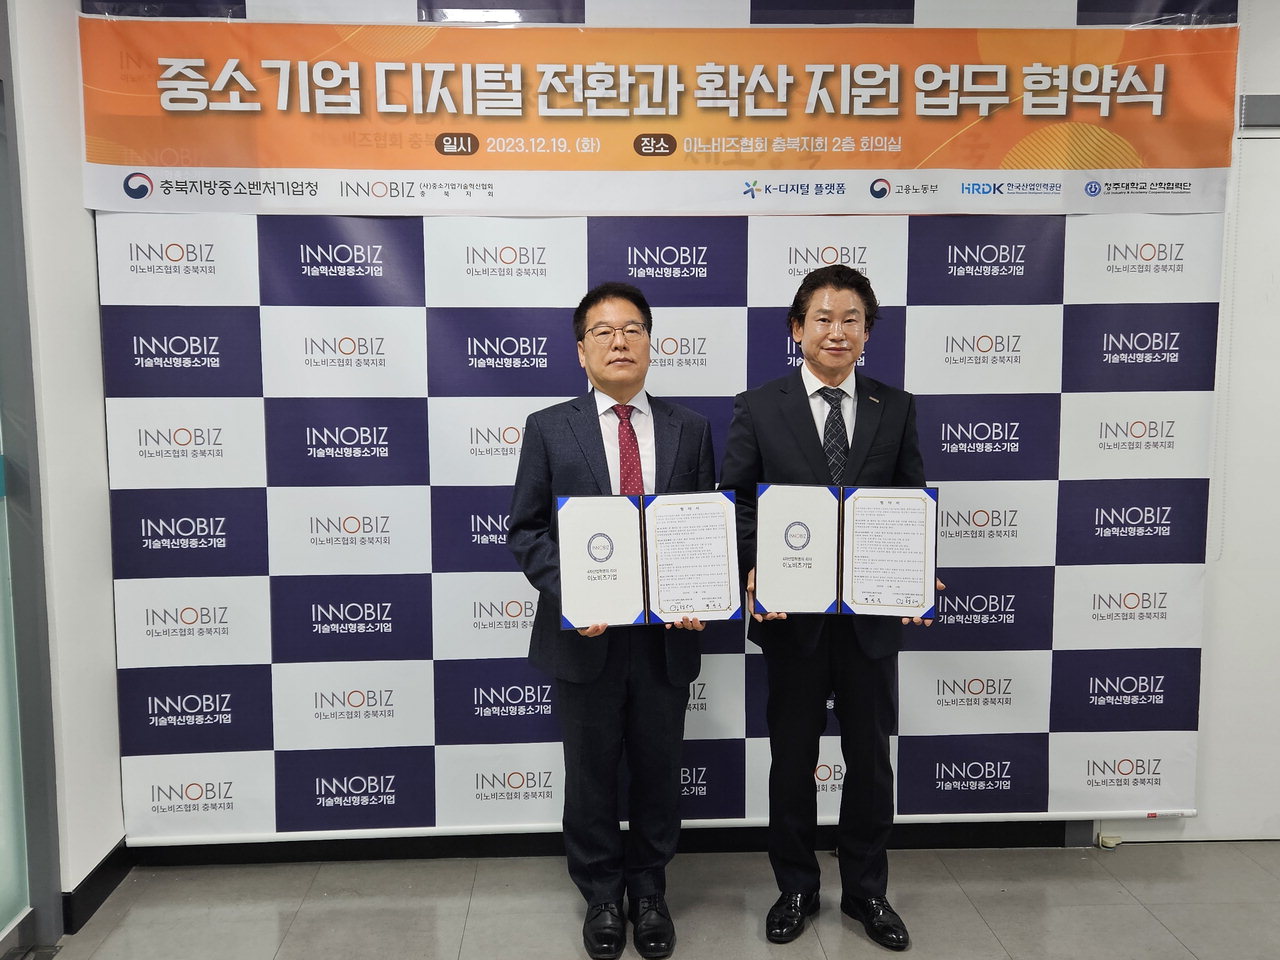 19일 정선욱 충북중기청장과 임형택 이노비즈협회 충북지회장이 업무협약을 맺었다.